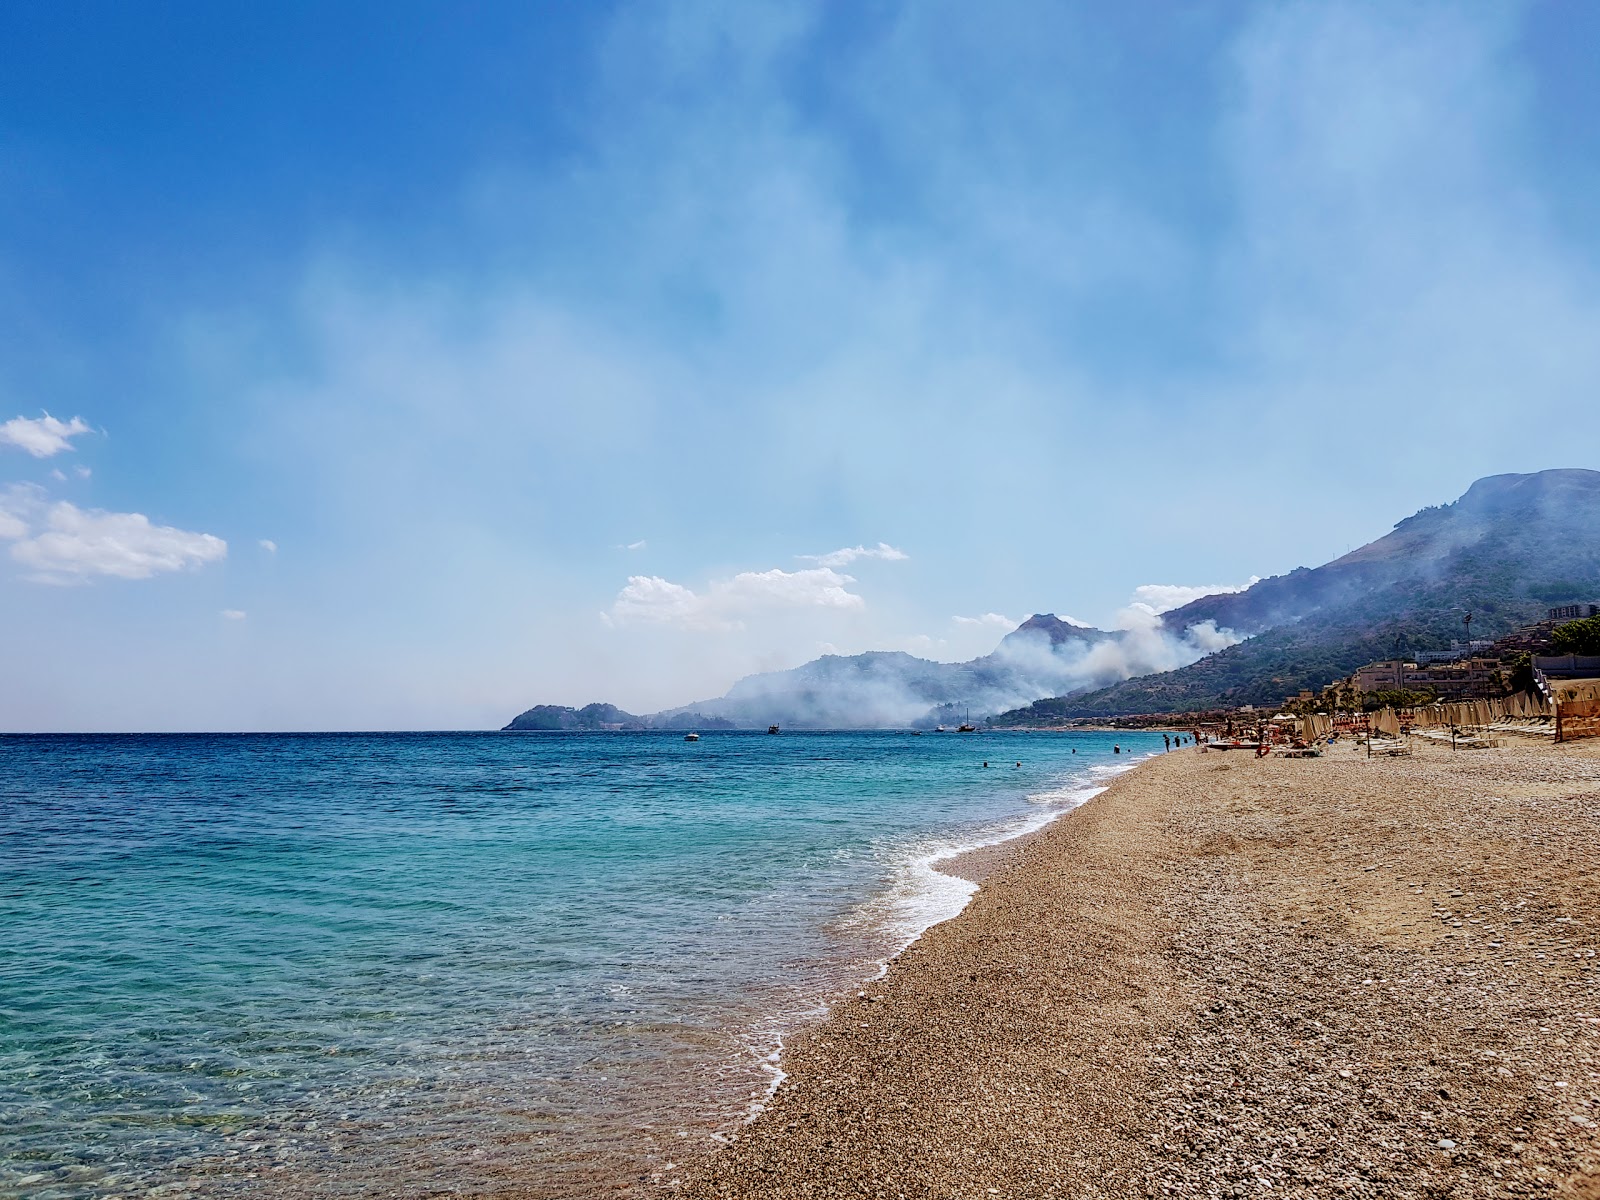 Spiaggia di Letojanni II'in fotoğrafı hafif çakıl yüzey ile